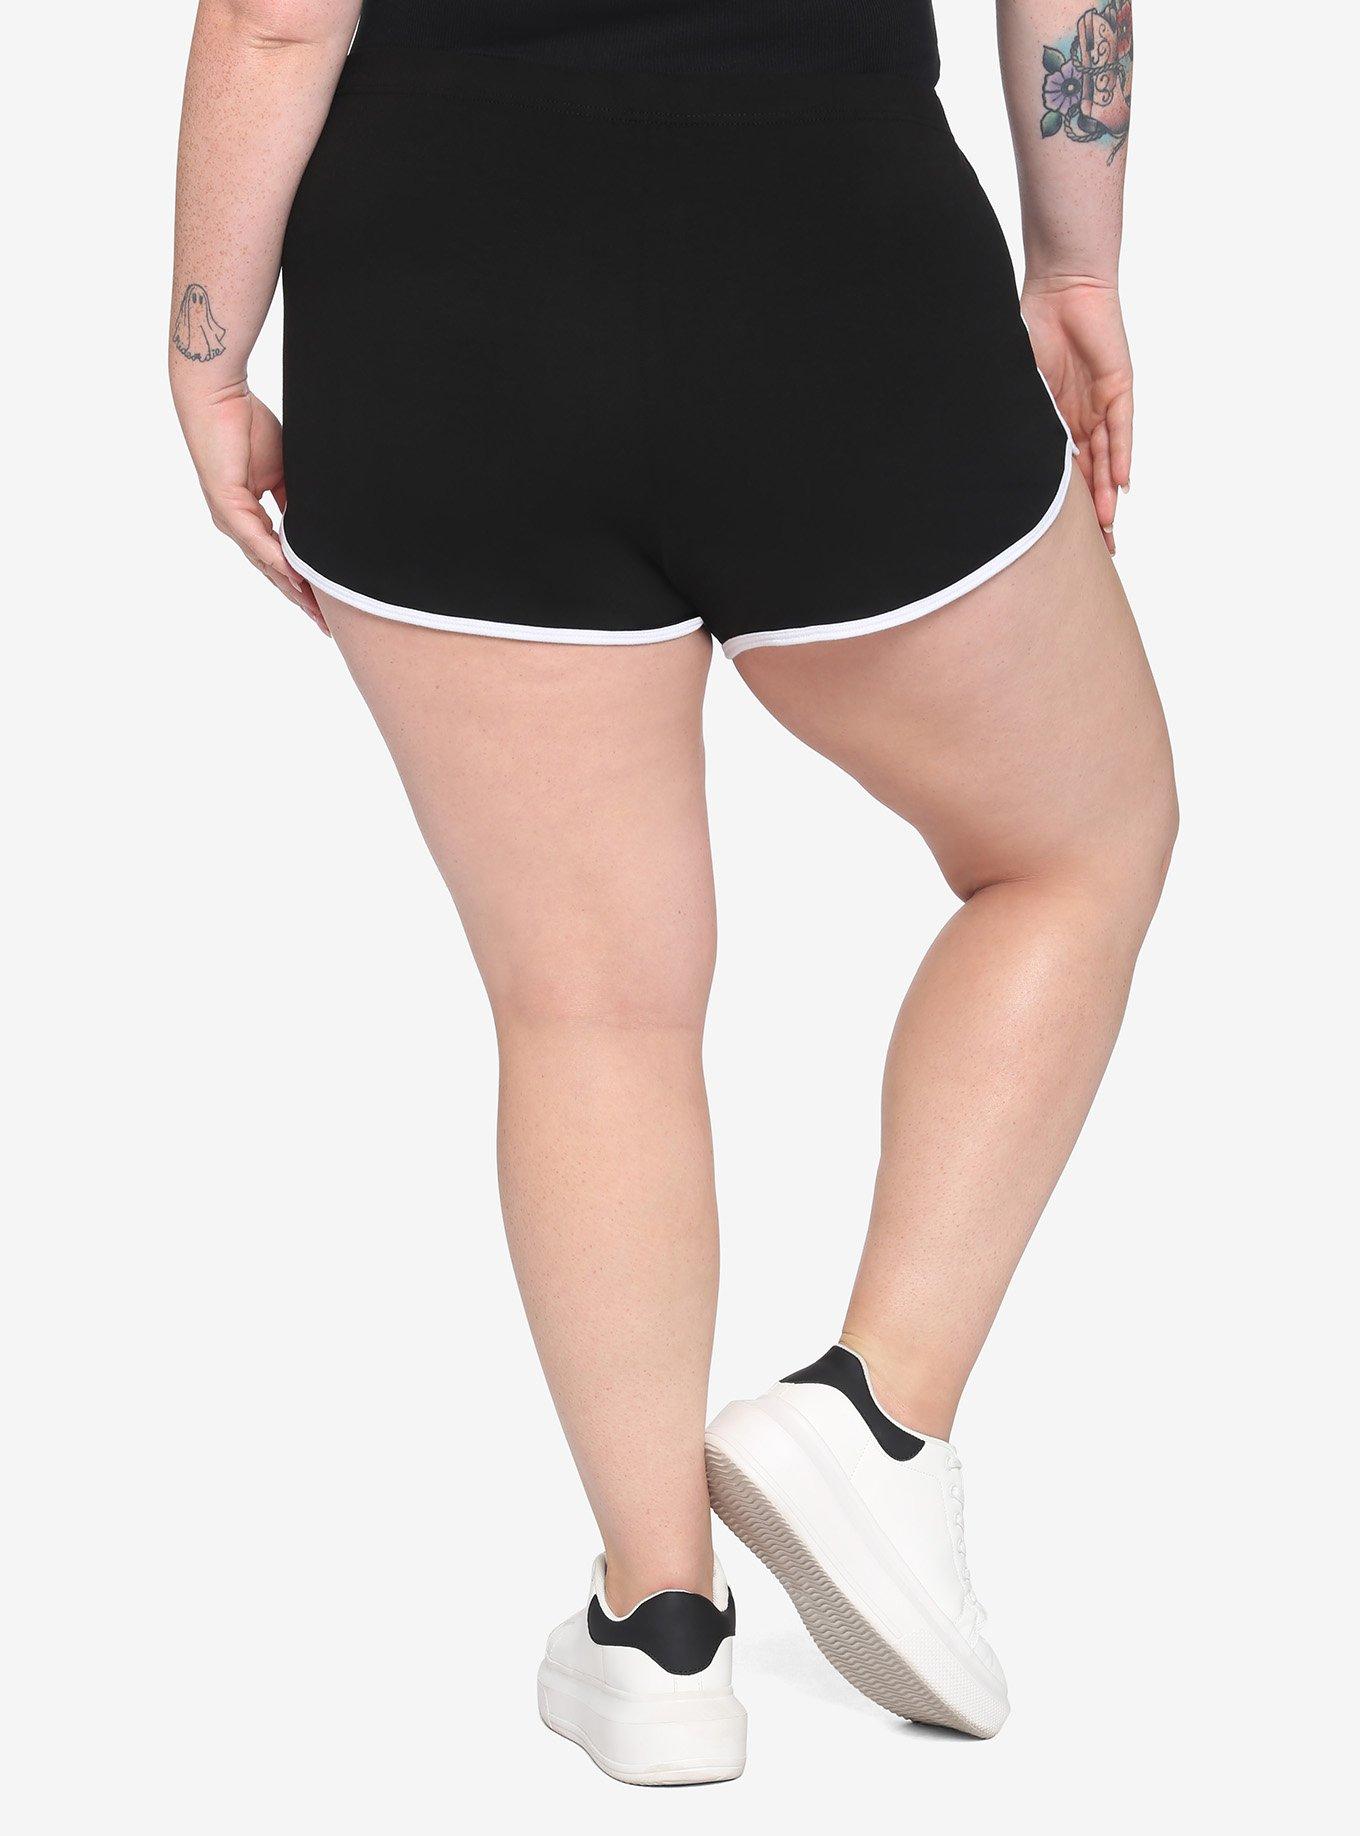 Beetlejuice Chibi Girls Soft Shorts Plus Size, MULTI, alternate